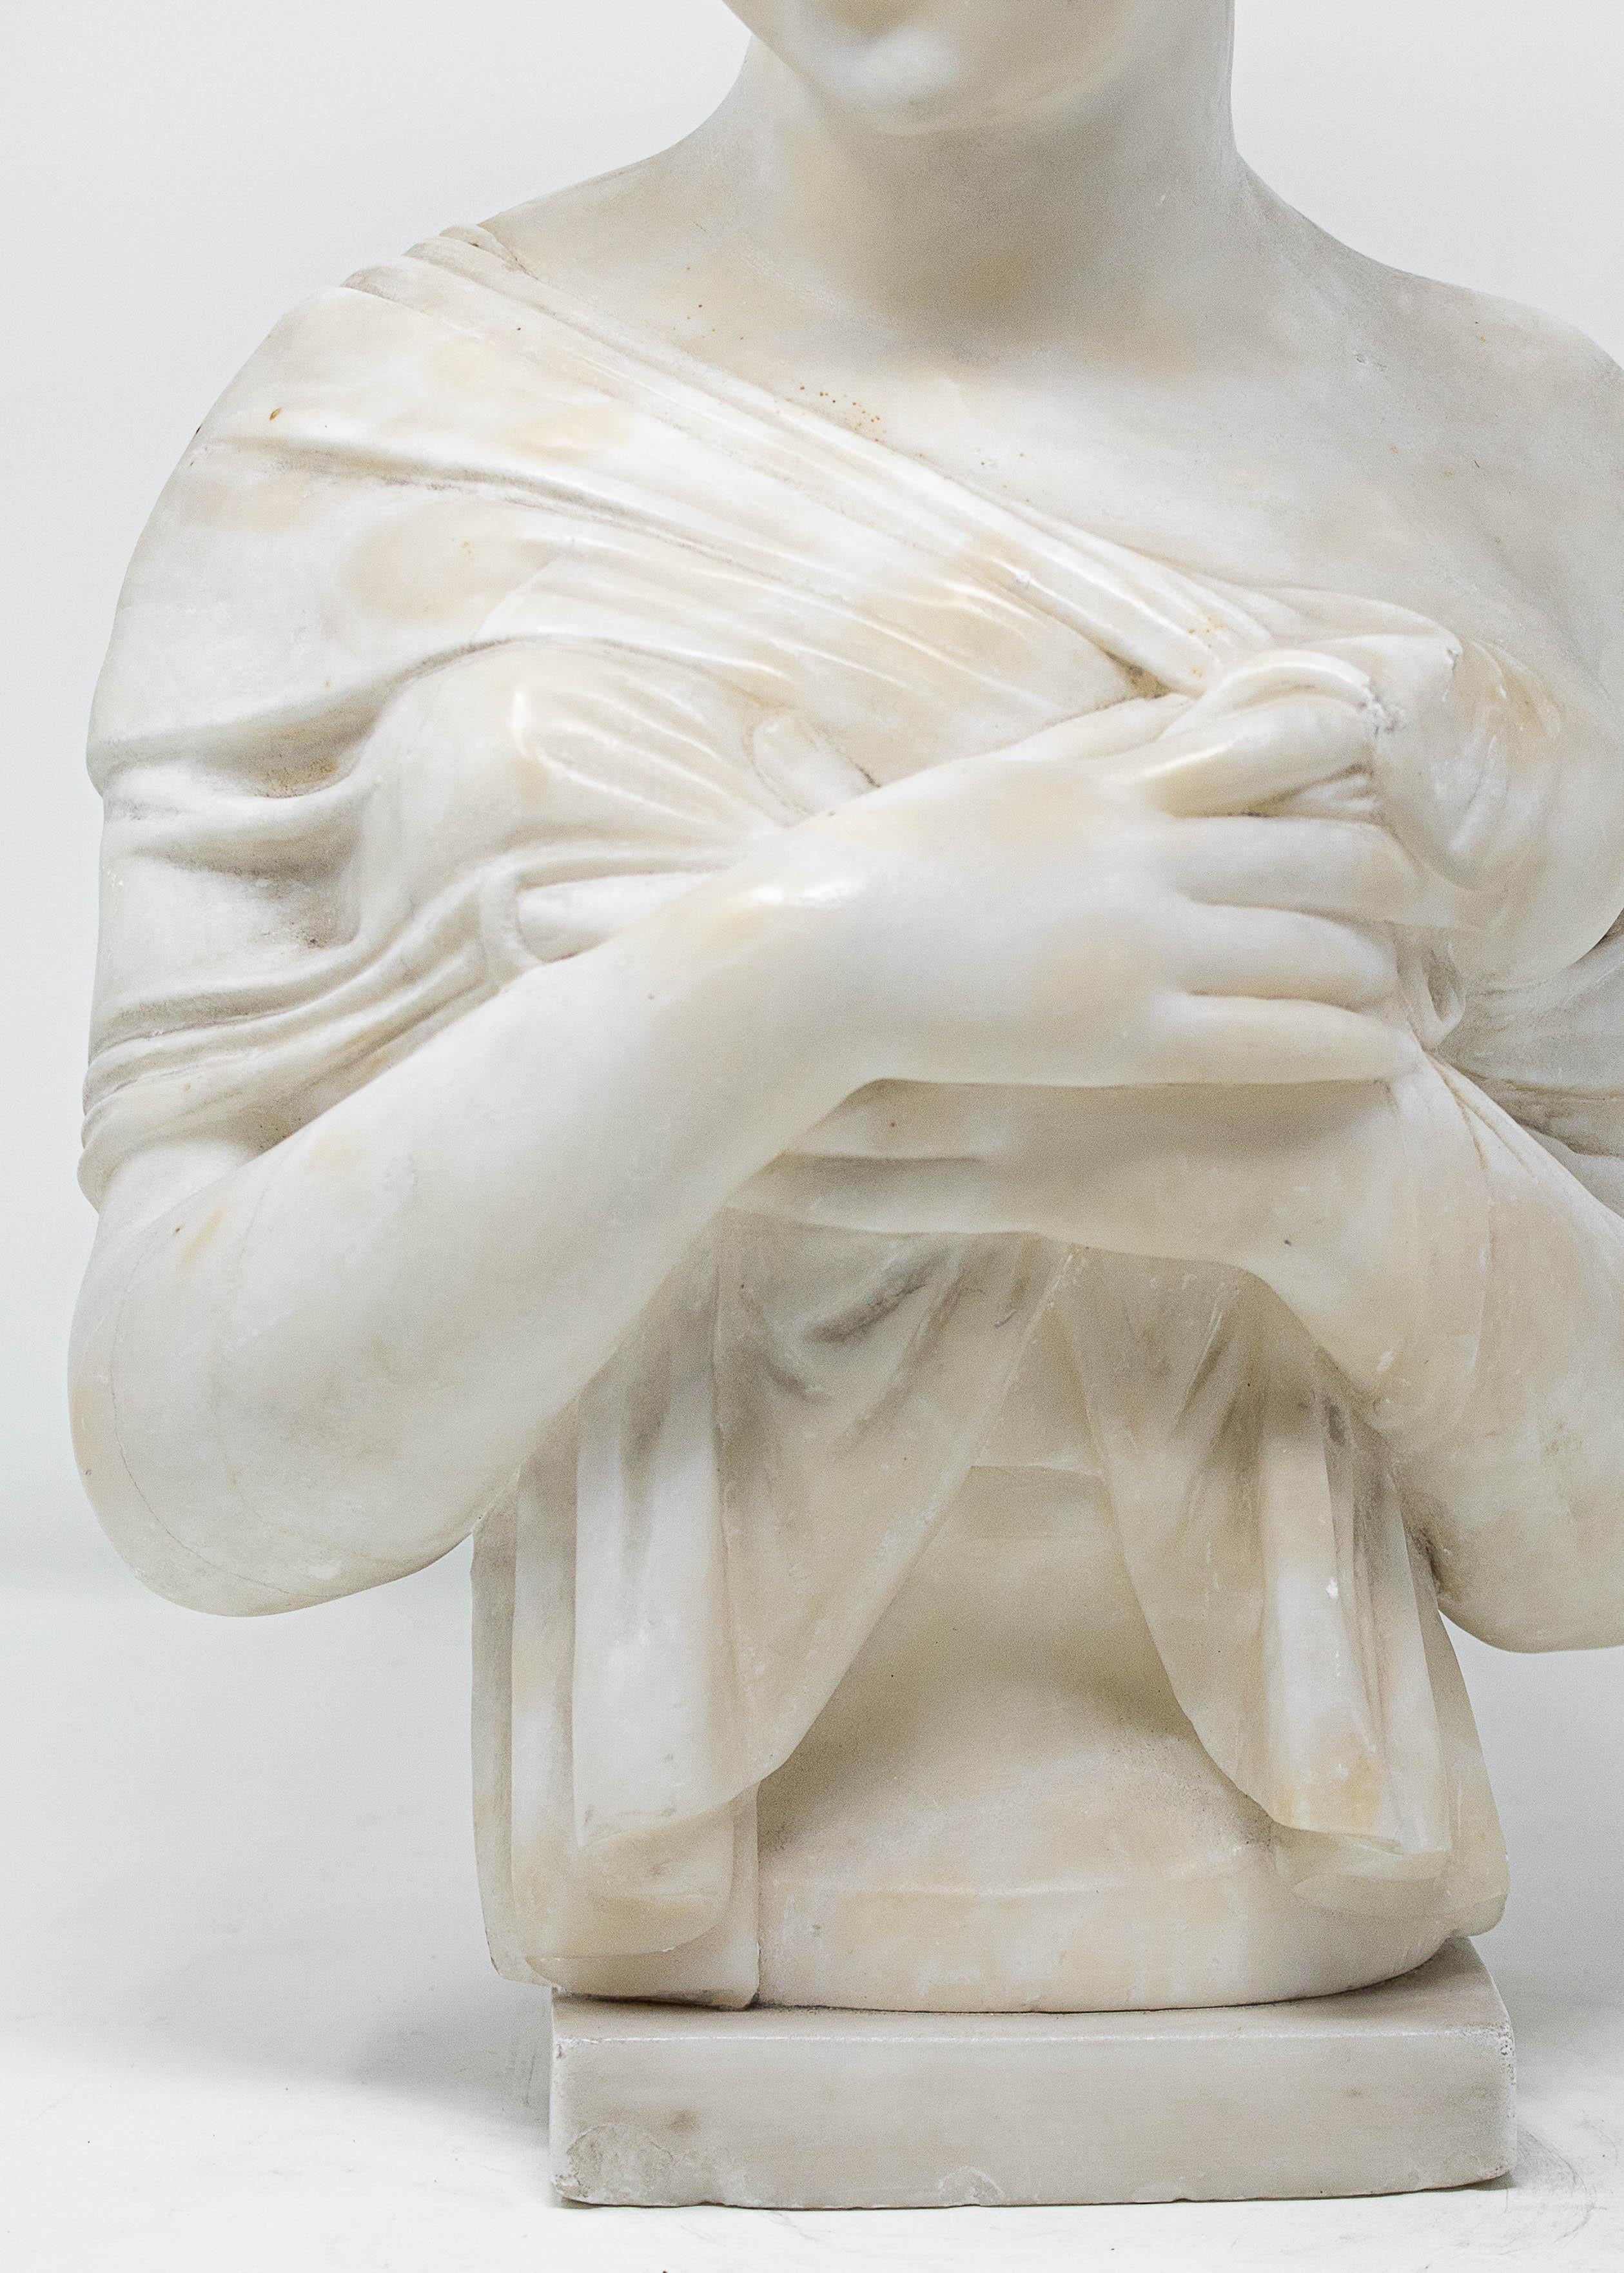 19e siècle

Buste de Juliette Récamier

Albâtre, 42 x 23 x 11 cm

La sculpture représente le buste de Jeanne Françoise Julie Adélaïde Bernard, plus connue sous le nom de Juliette Récamier ou Madame Récamier (Lyon, 3 décembre 1777 - Paris, 11 mai